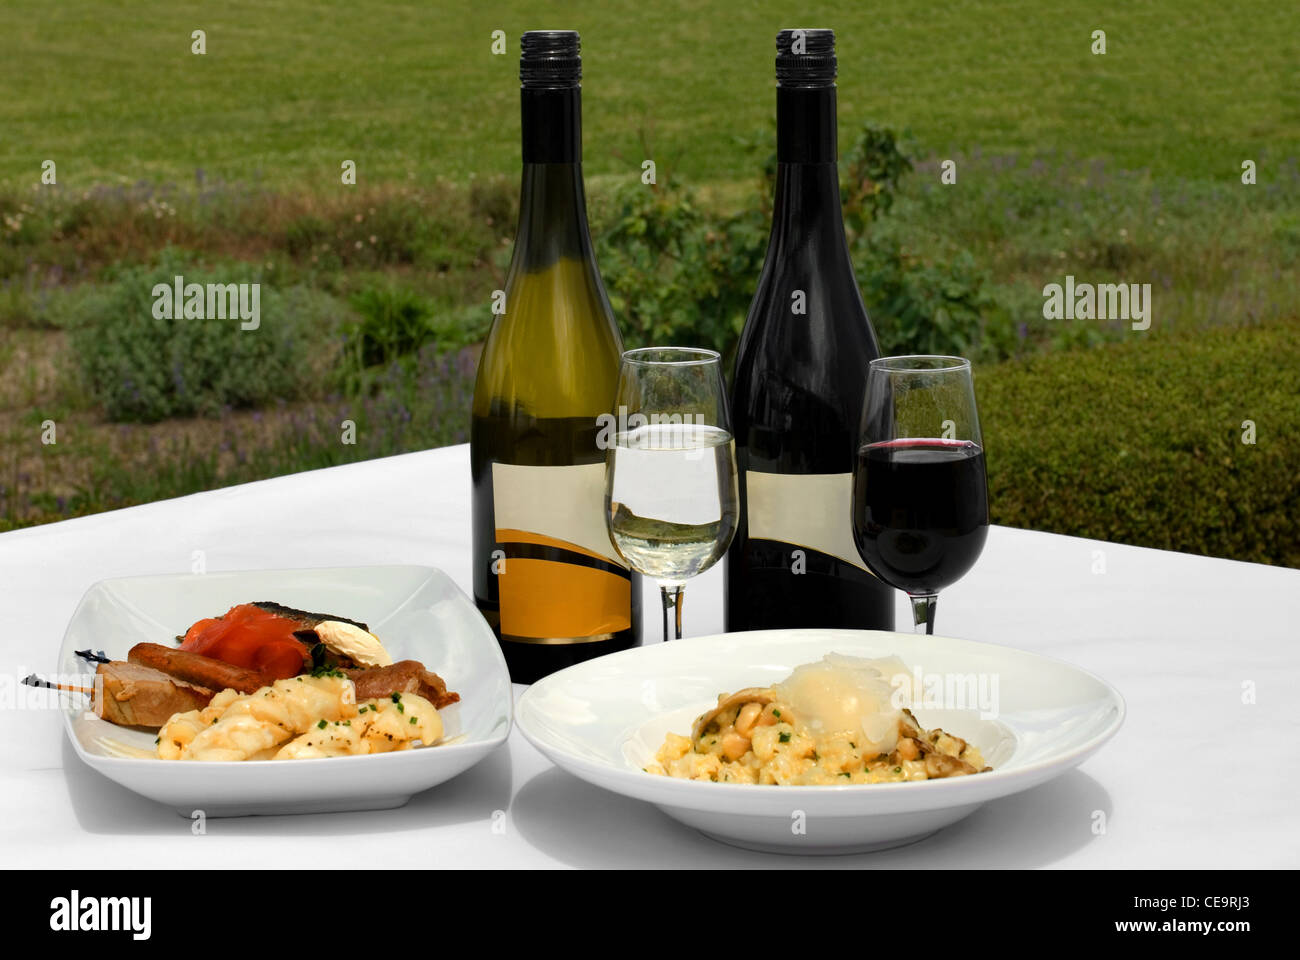 Ein Entree Verkostung Platte und eine Schüssel mit Pilz-Risotto, begleitet von einem Glas Chardonnay Stockfoto